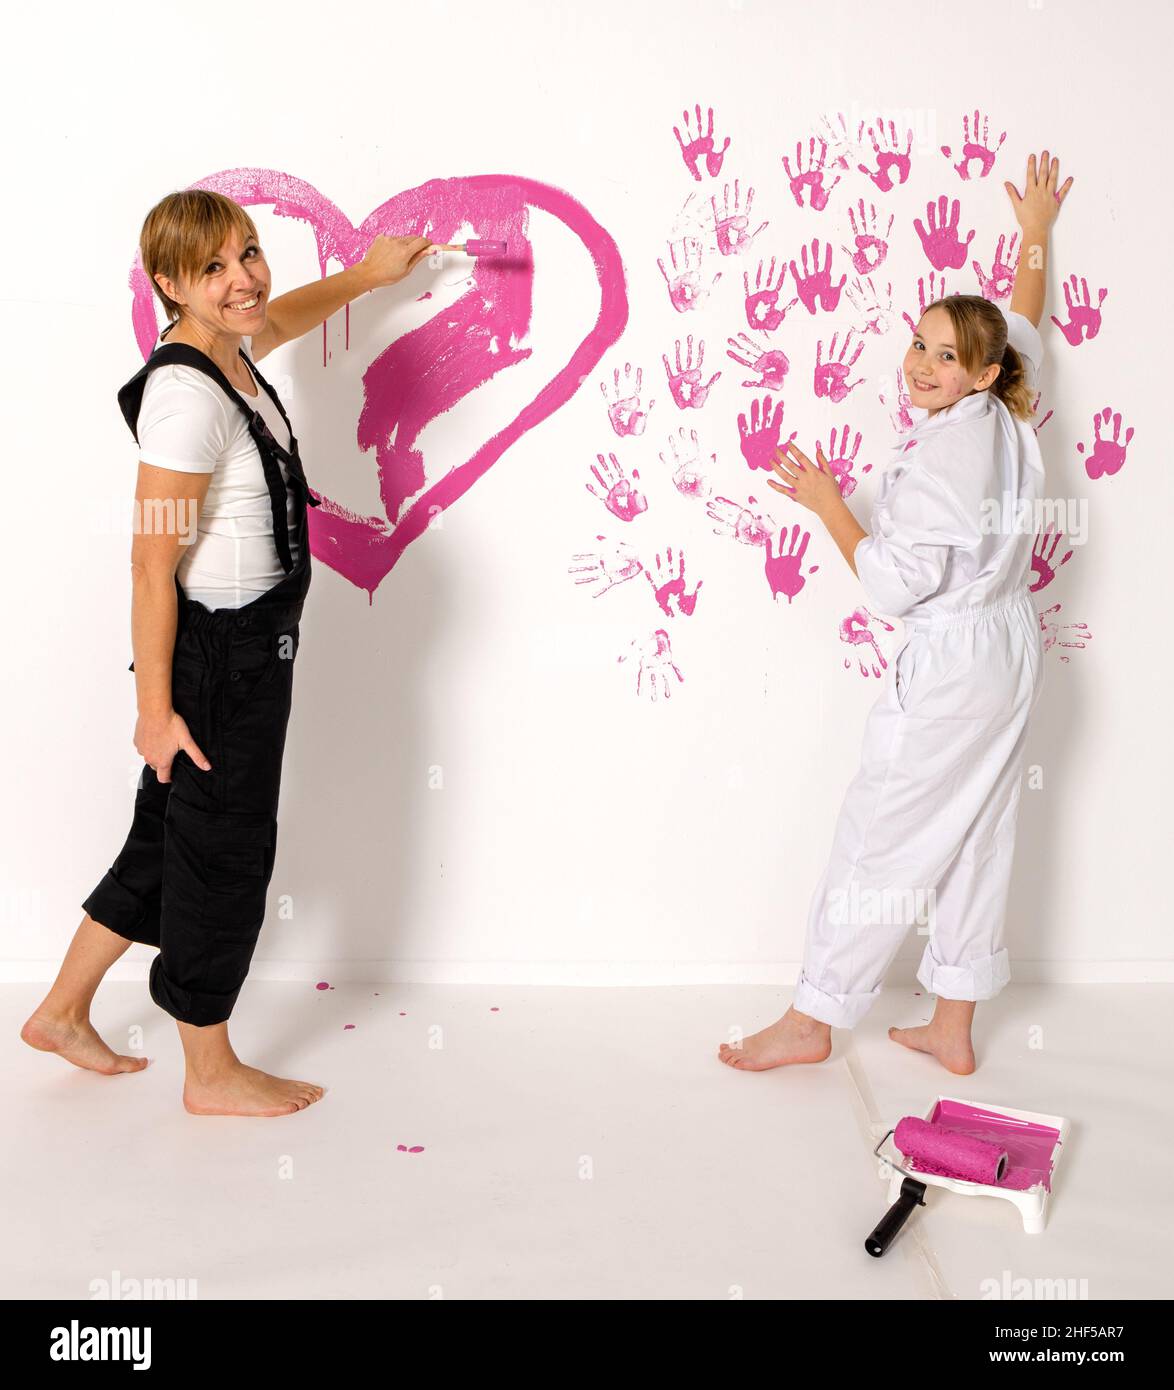 Madre e figlia di 10 anni sta dipingendo di colore rosa su una parete bianca. Entrambi stanno guardando in macchina fotografica con sorrisi felici. Foto Stock